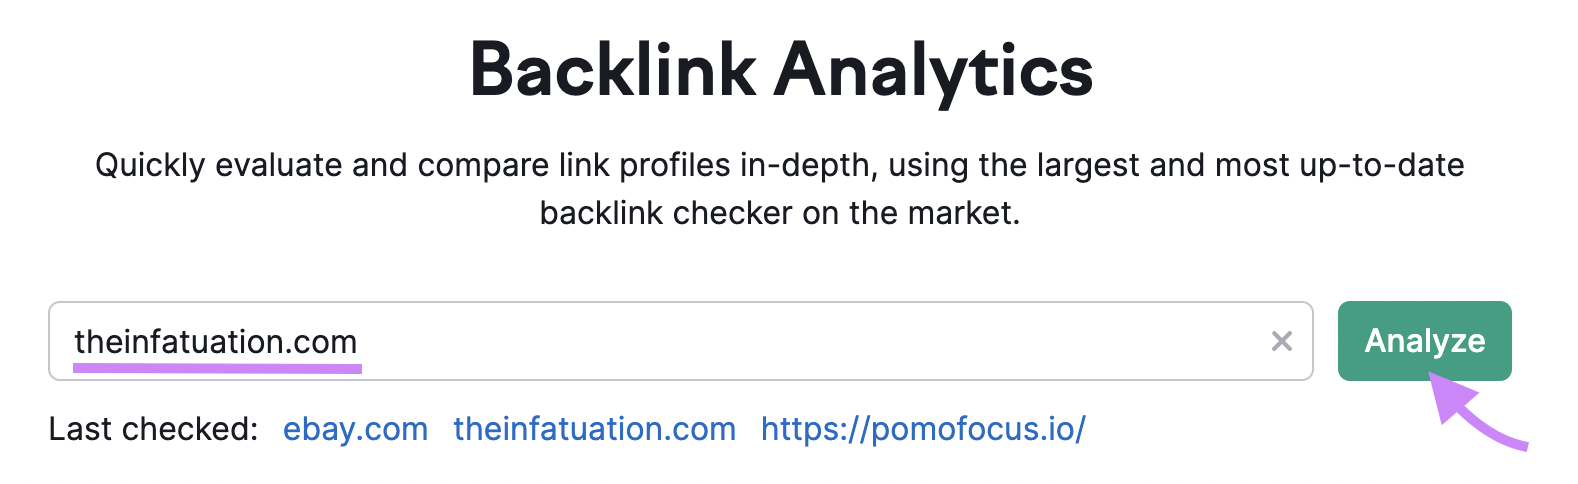 "theinfatuation.com" saisi dans la barre de recherche Backlink Analytics